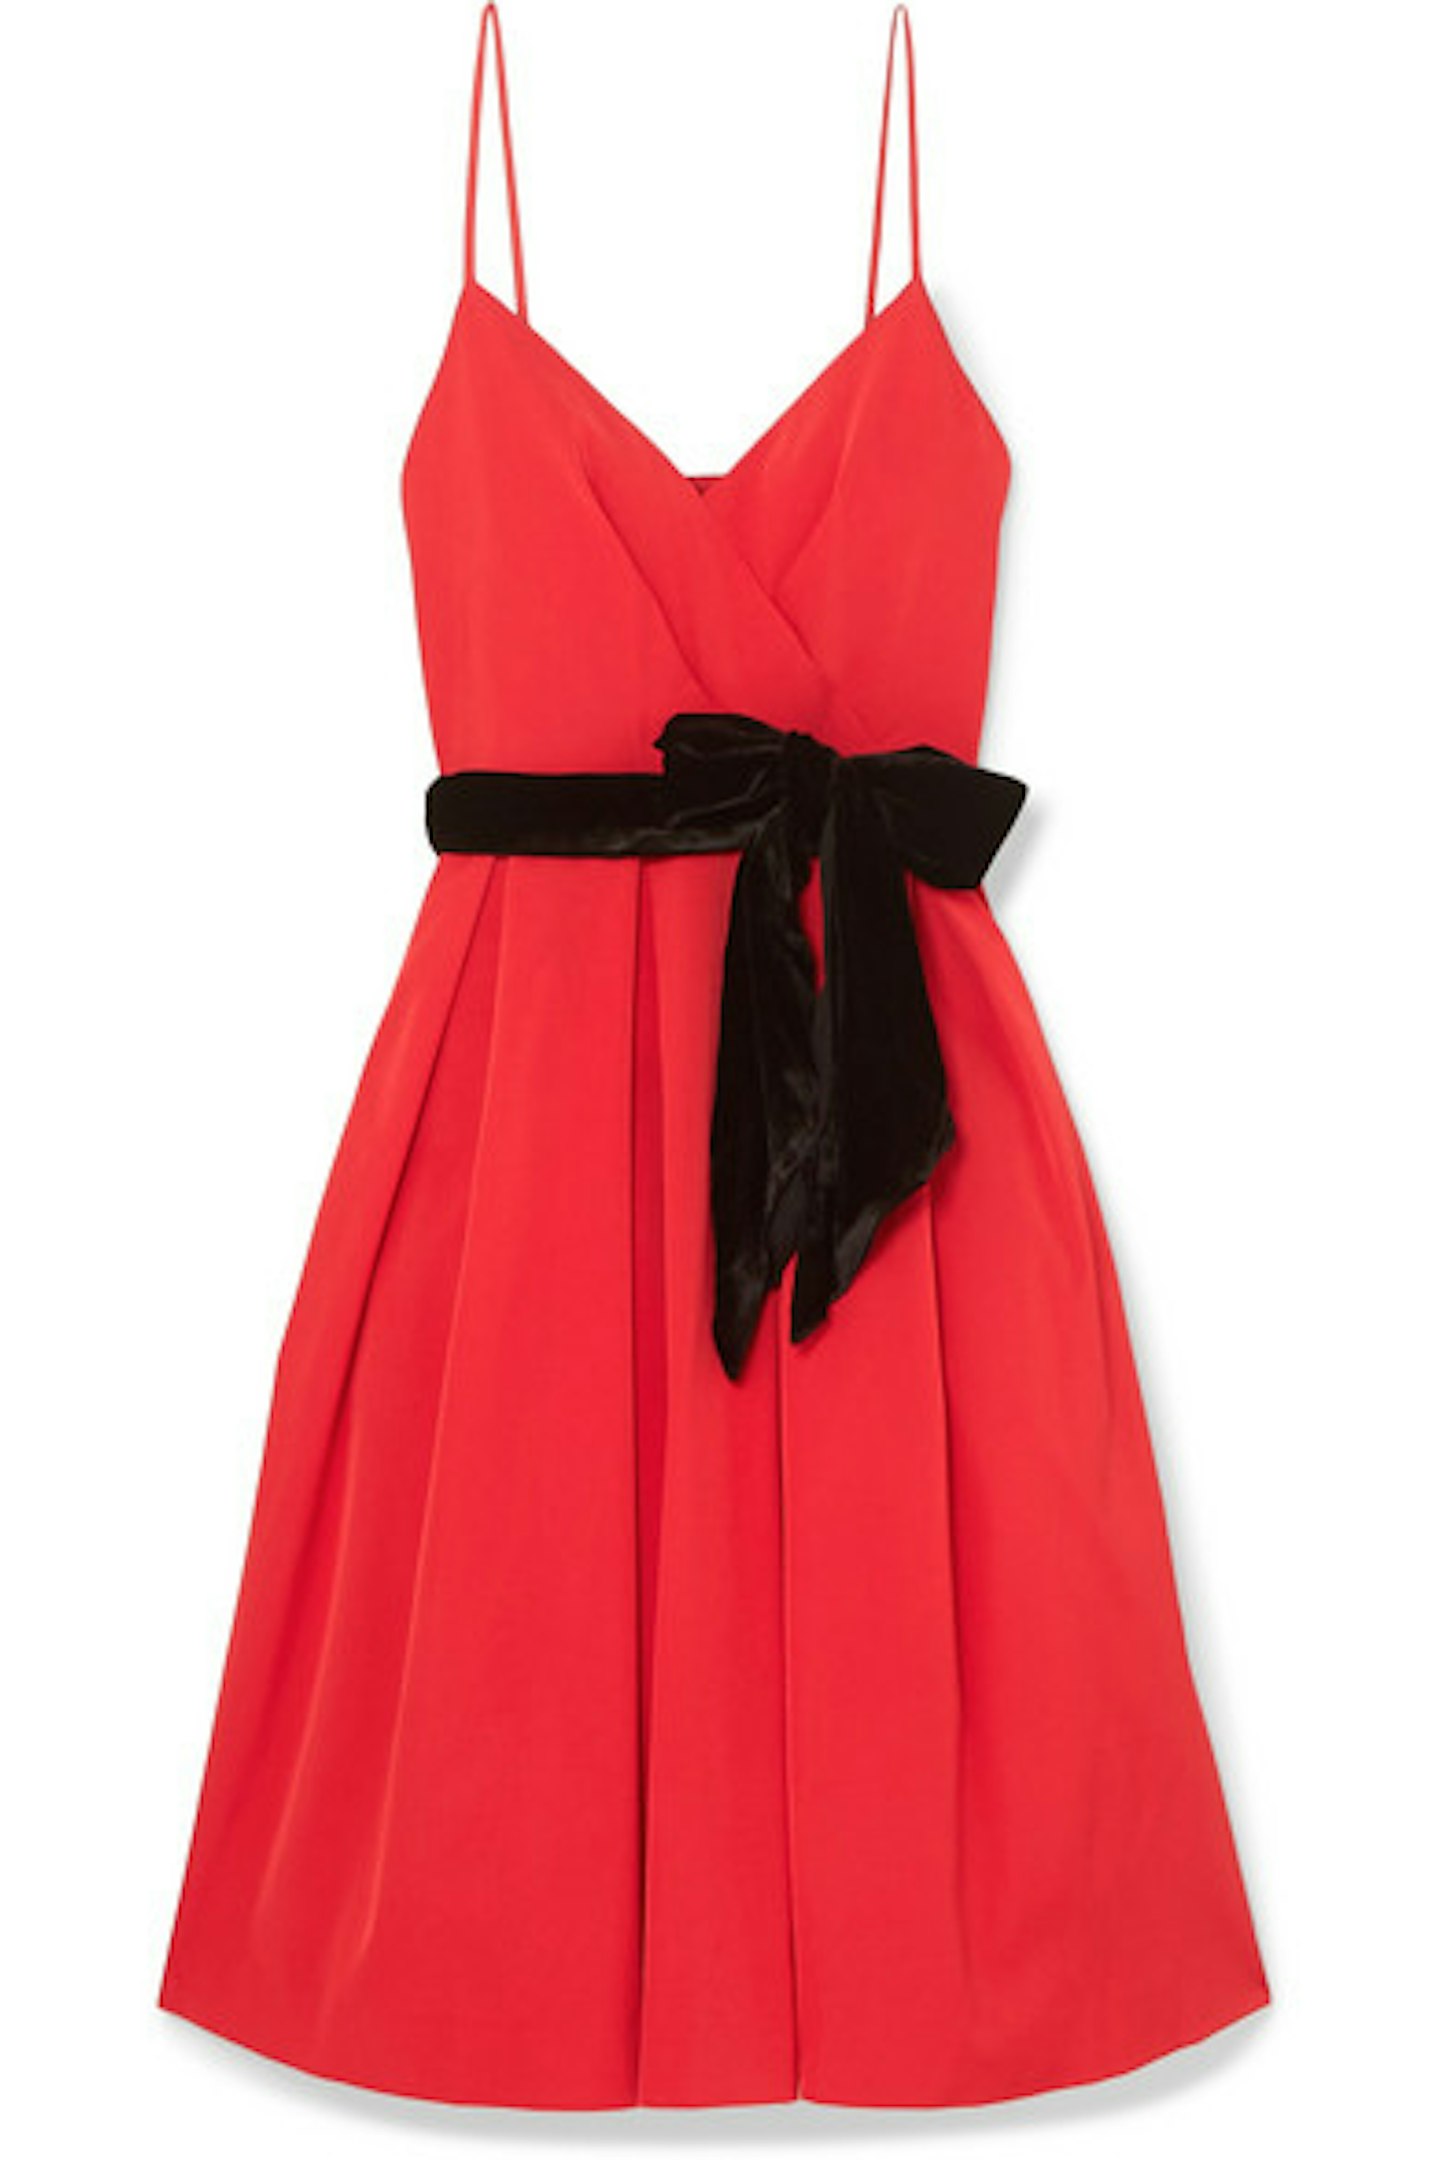 Velvet Trimmed Dress, £100